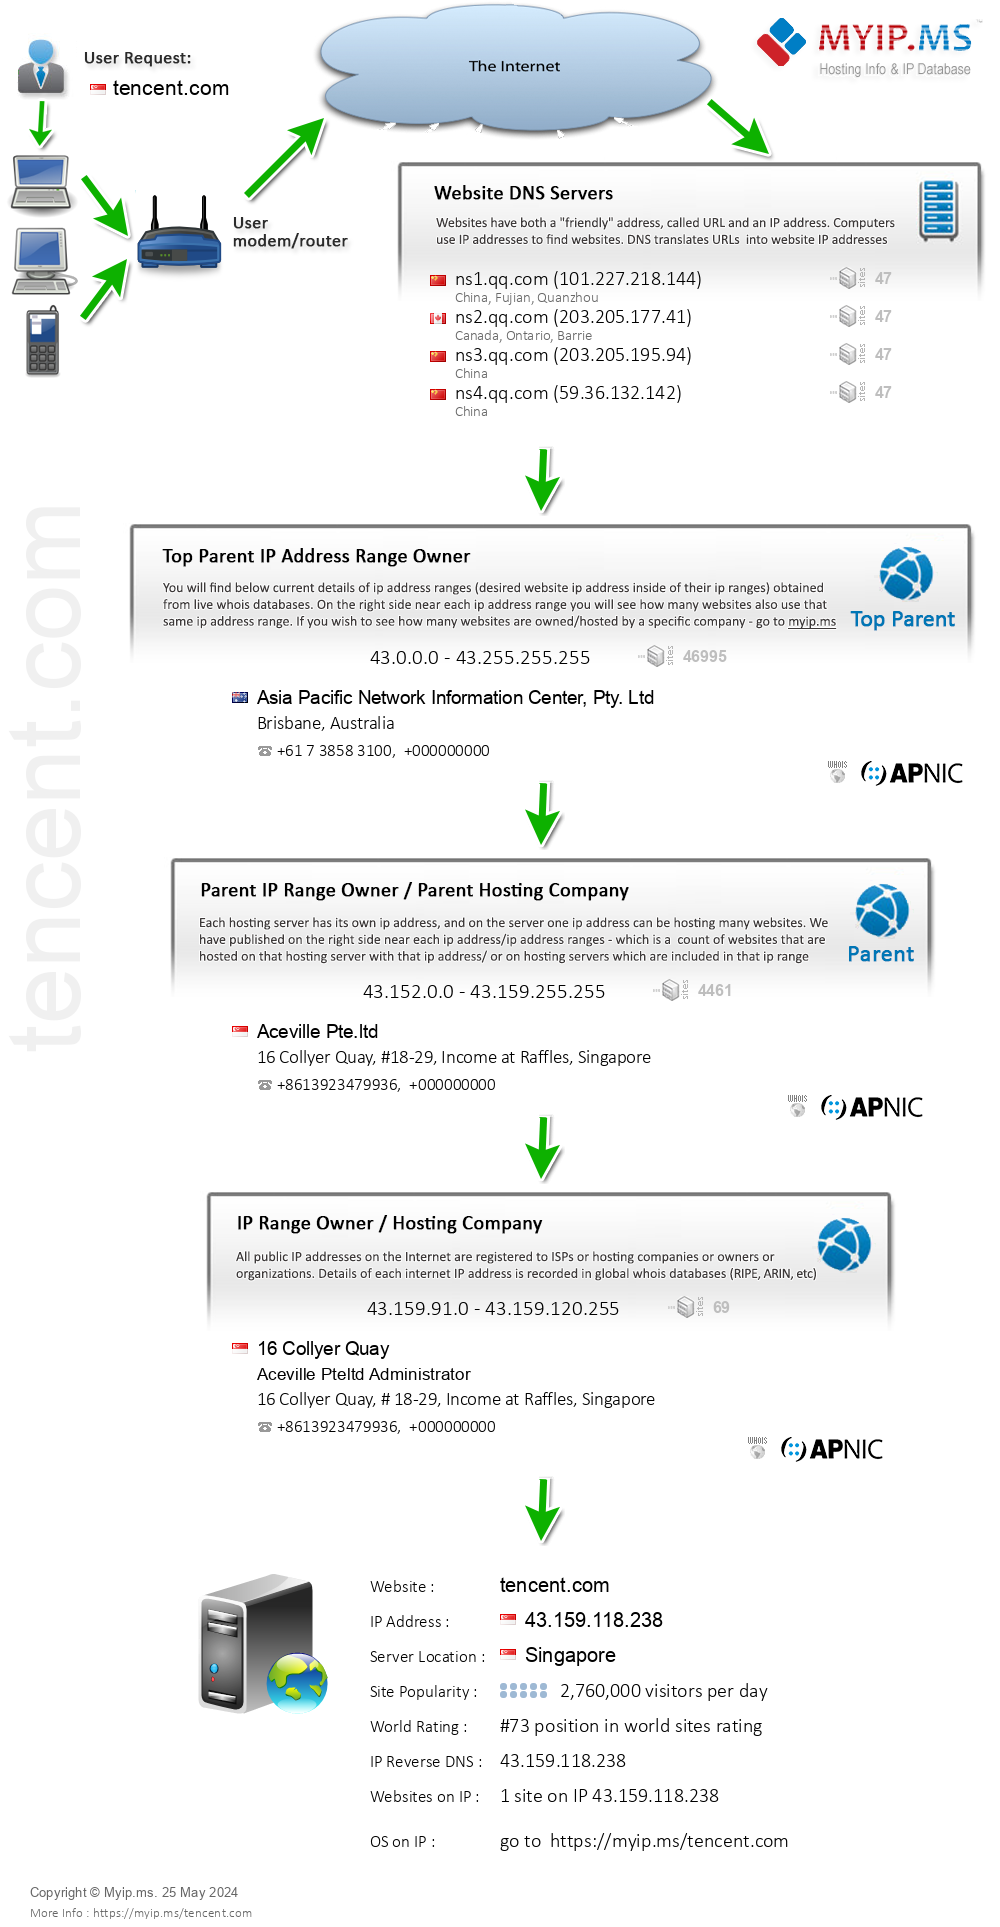 Tencent.com - Website Hosting Visual IP Diagram